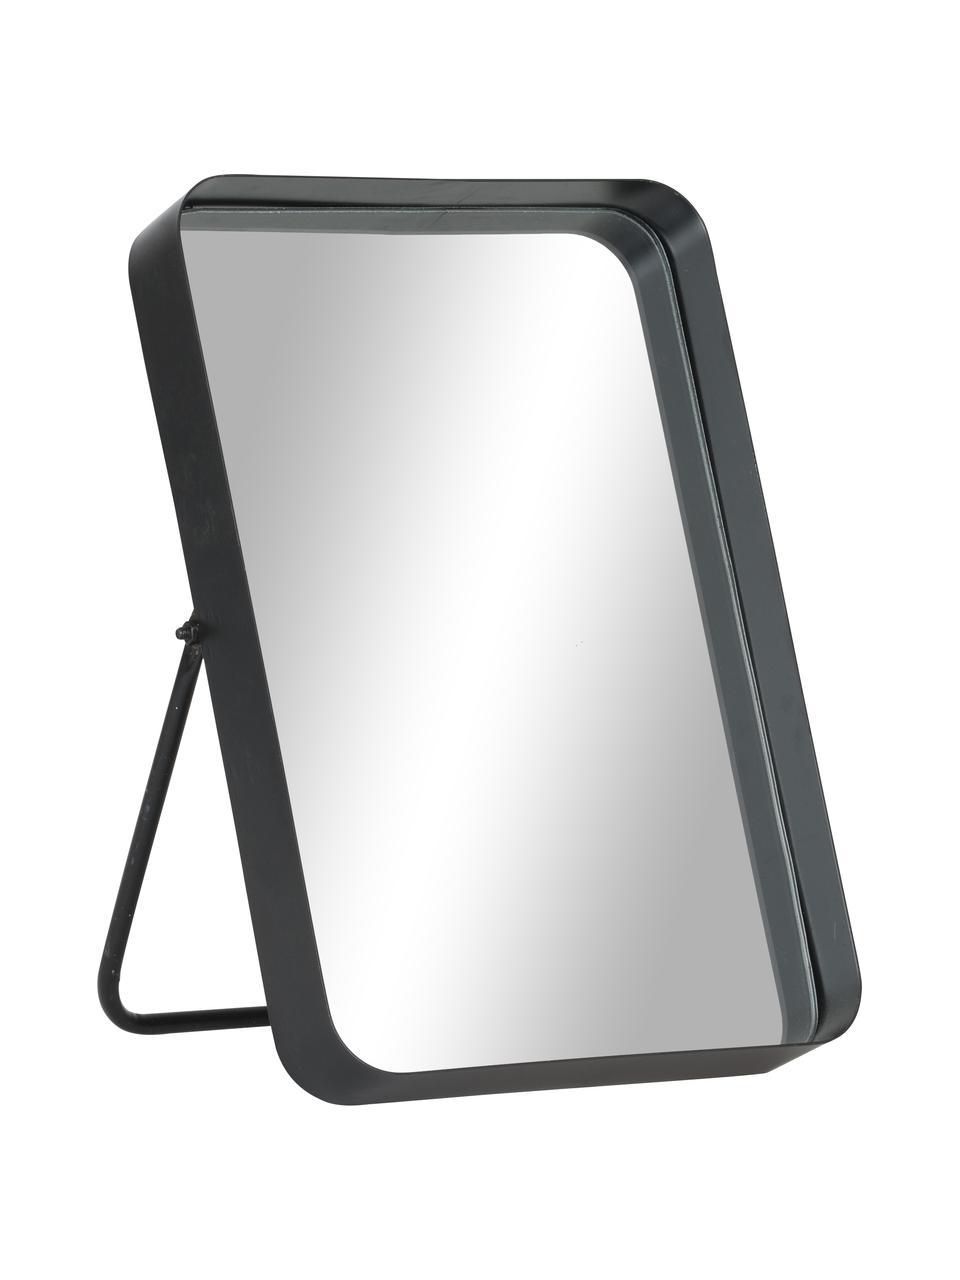 Eckiger Kosmetikspiegel Bordspejl mit schwarzem Metallrahmen, Rahmen: Metall, pulverbeschichtet, Spiegelfläche: Spiegelglas, Schwarz, 22 x 33 cm